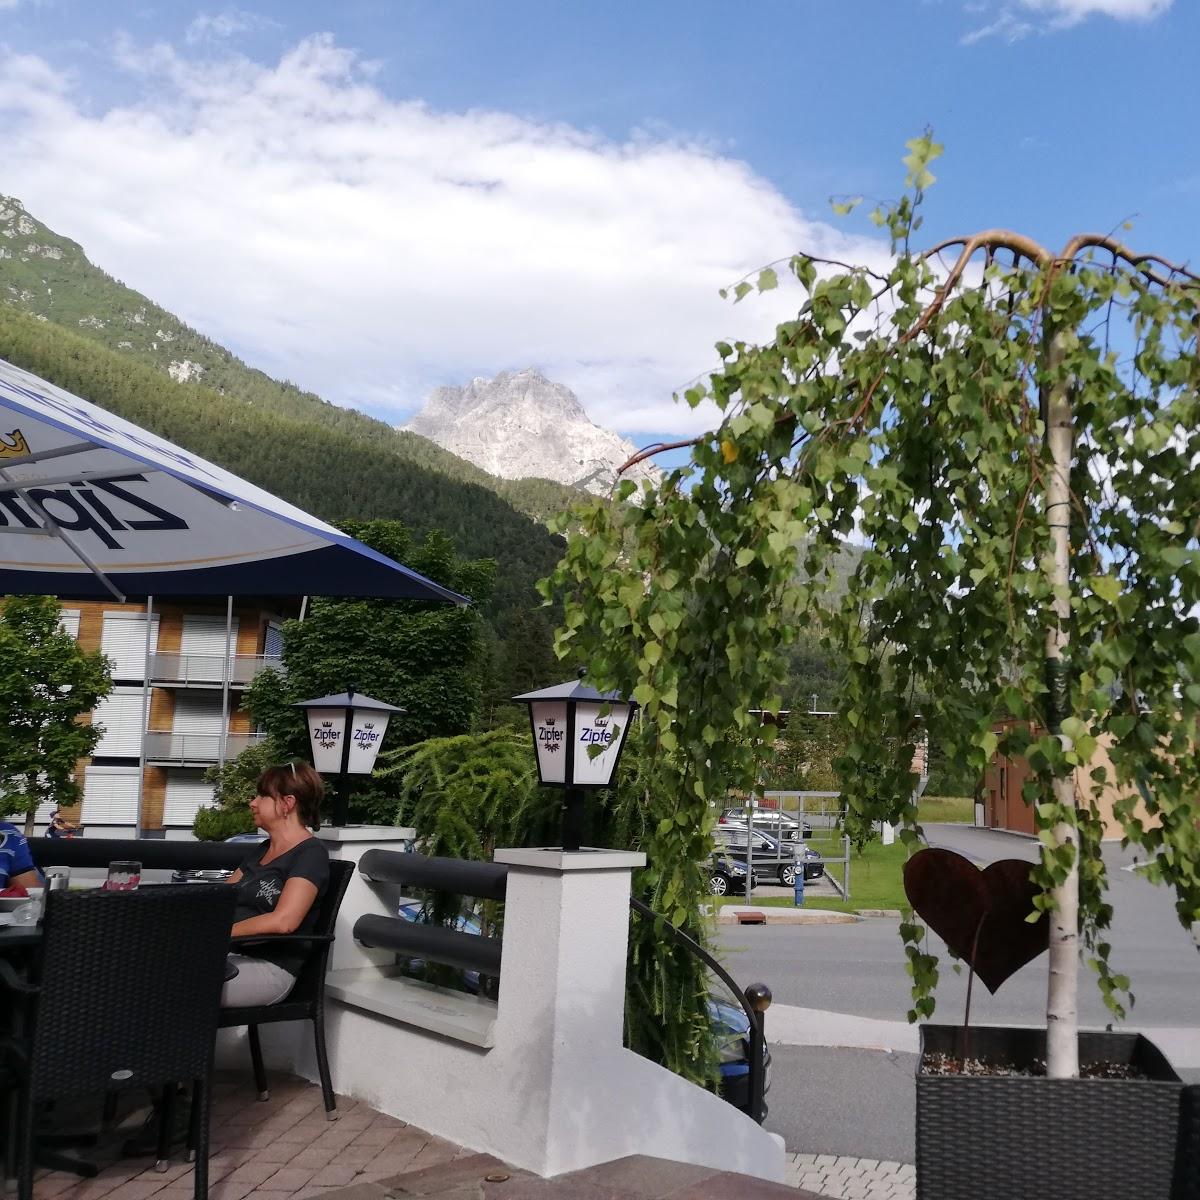 Restaurant "Cafe Platzerl" in Sankt Ulrich am Pillersee